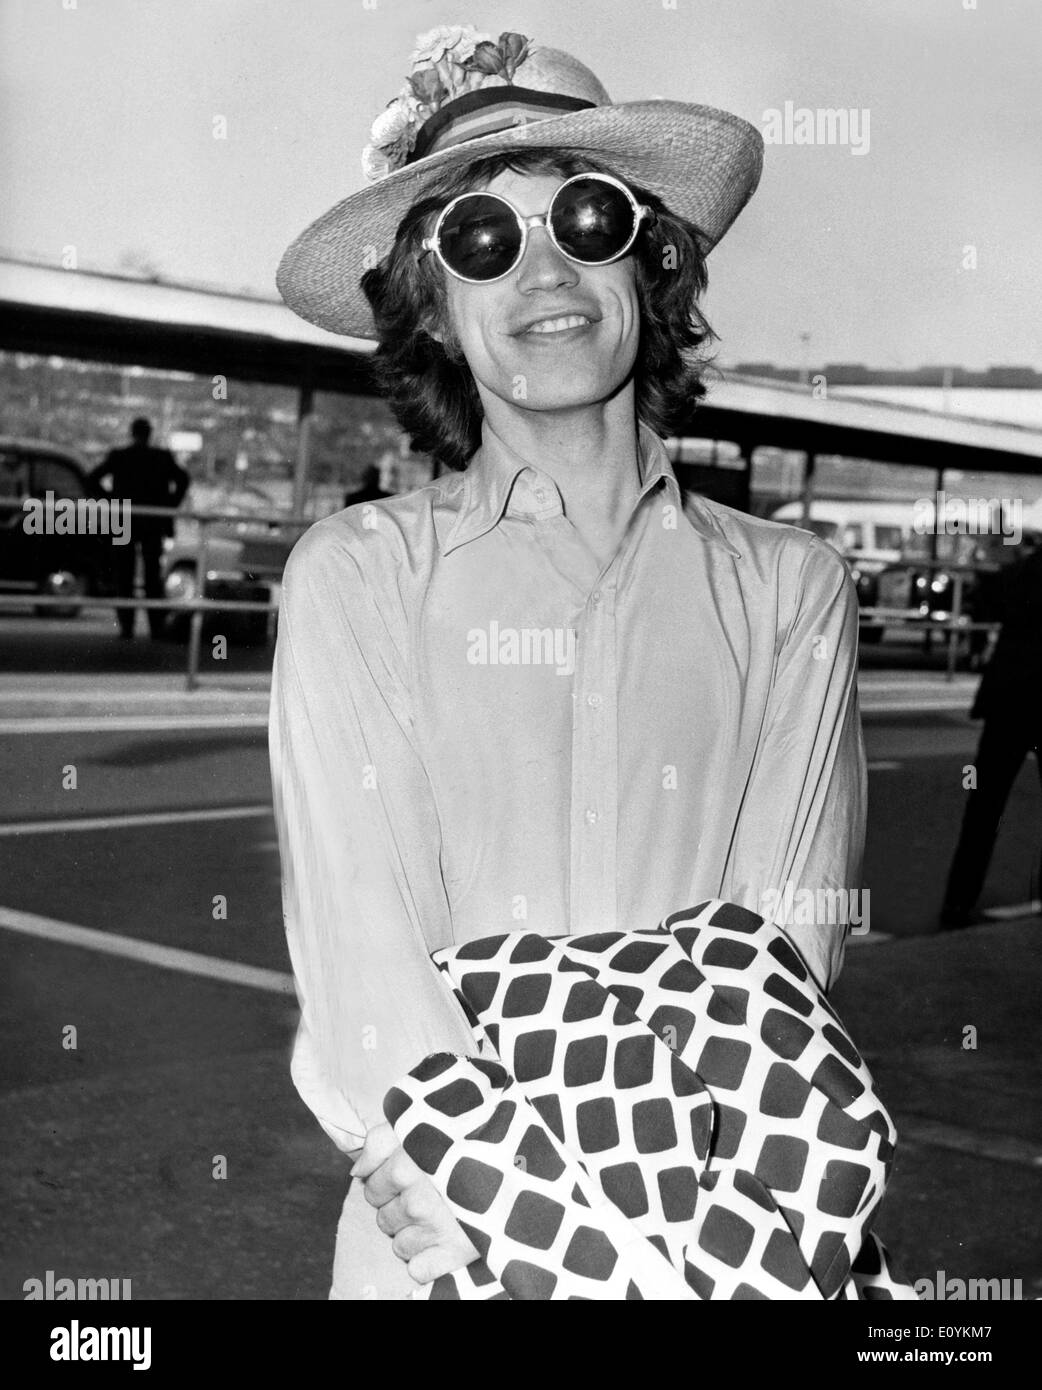 Rolling Stones-Sänger Mick Jagger am Flughafen Heathrow Stockfoto